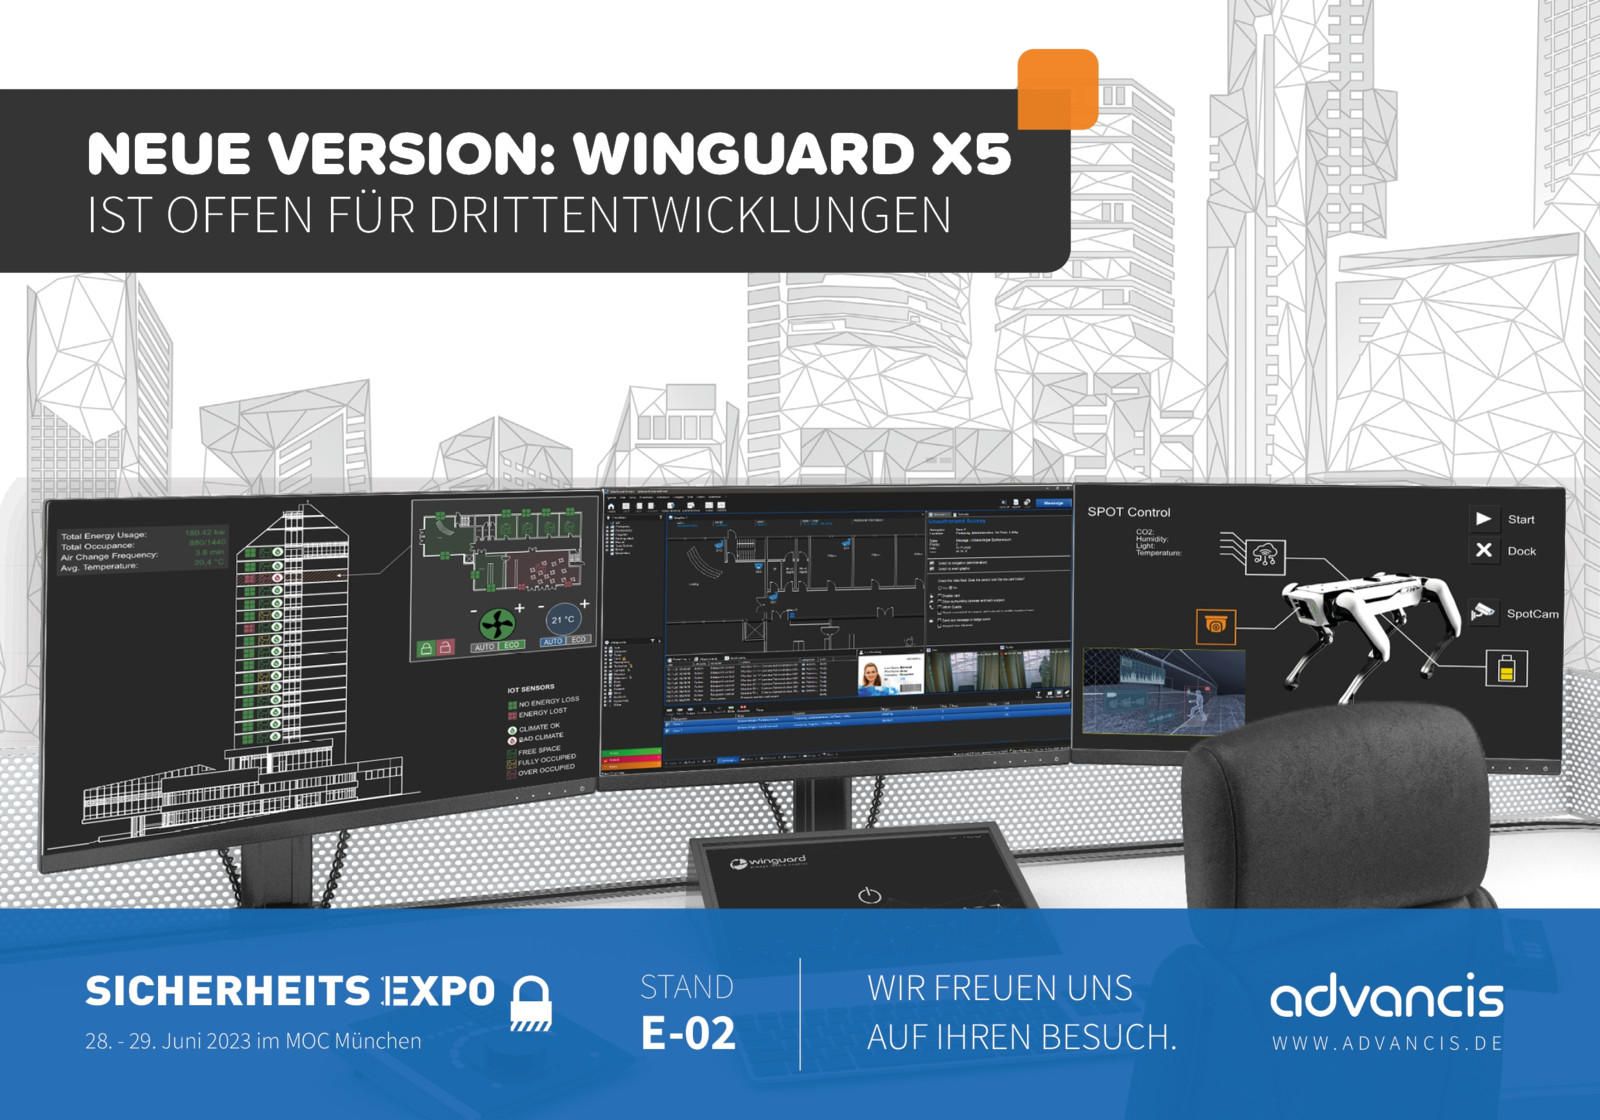 Advancis präsentiert auf der Sicherheitsexpo die offene Integrationsplattform Winguard X5 und den Advanced Identity Manager (AIM).